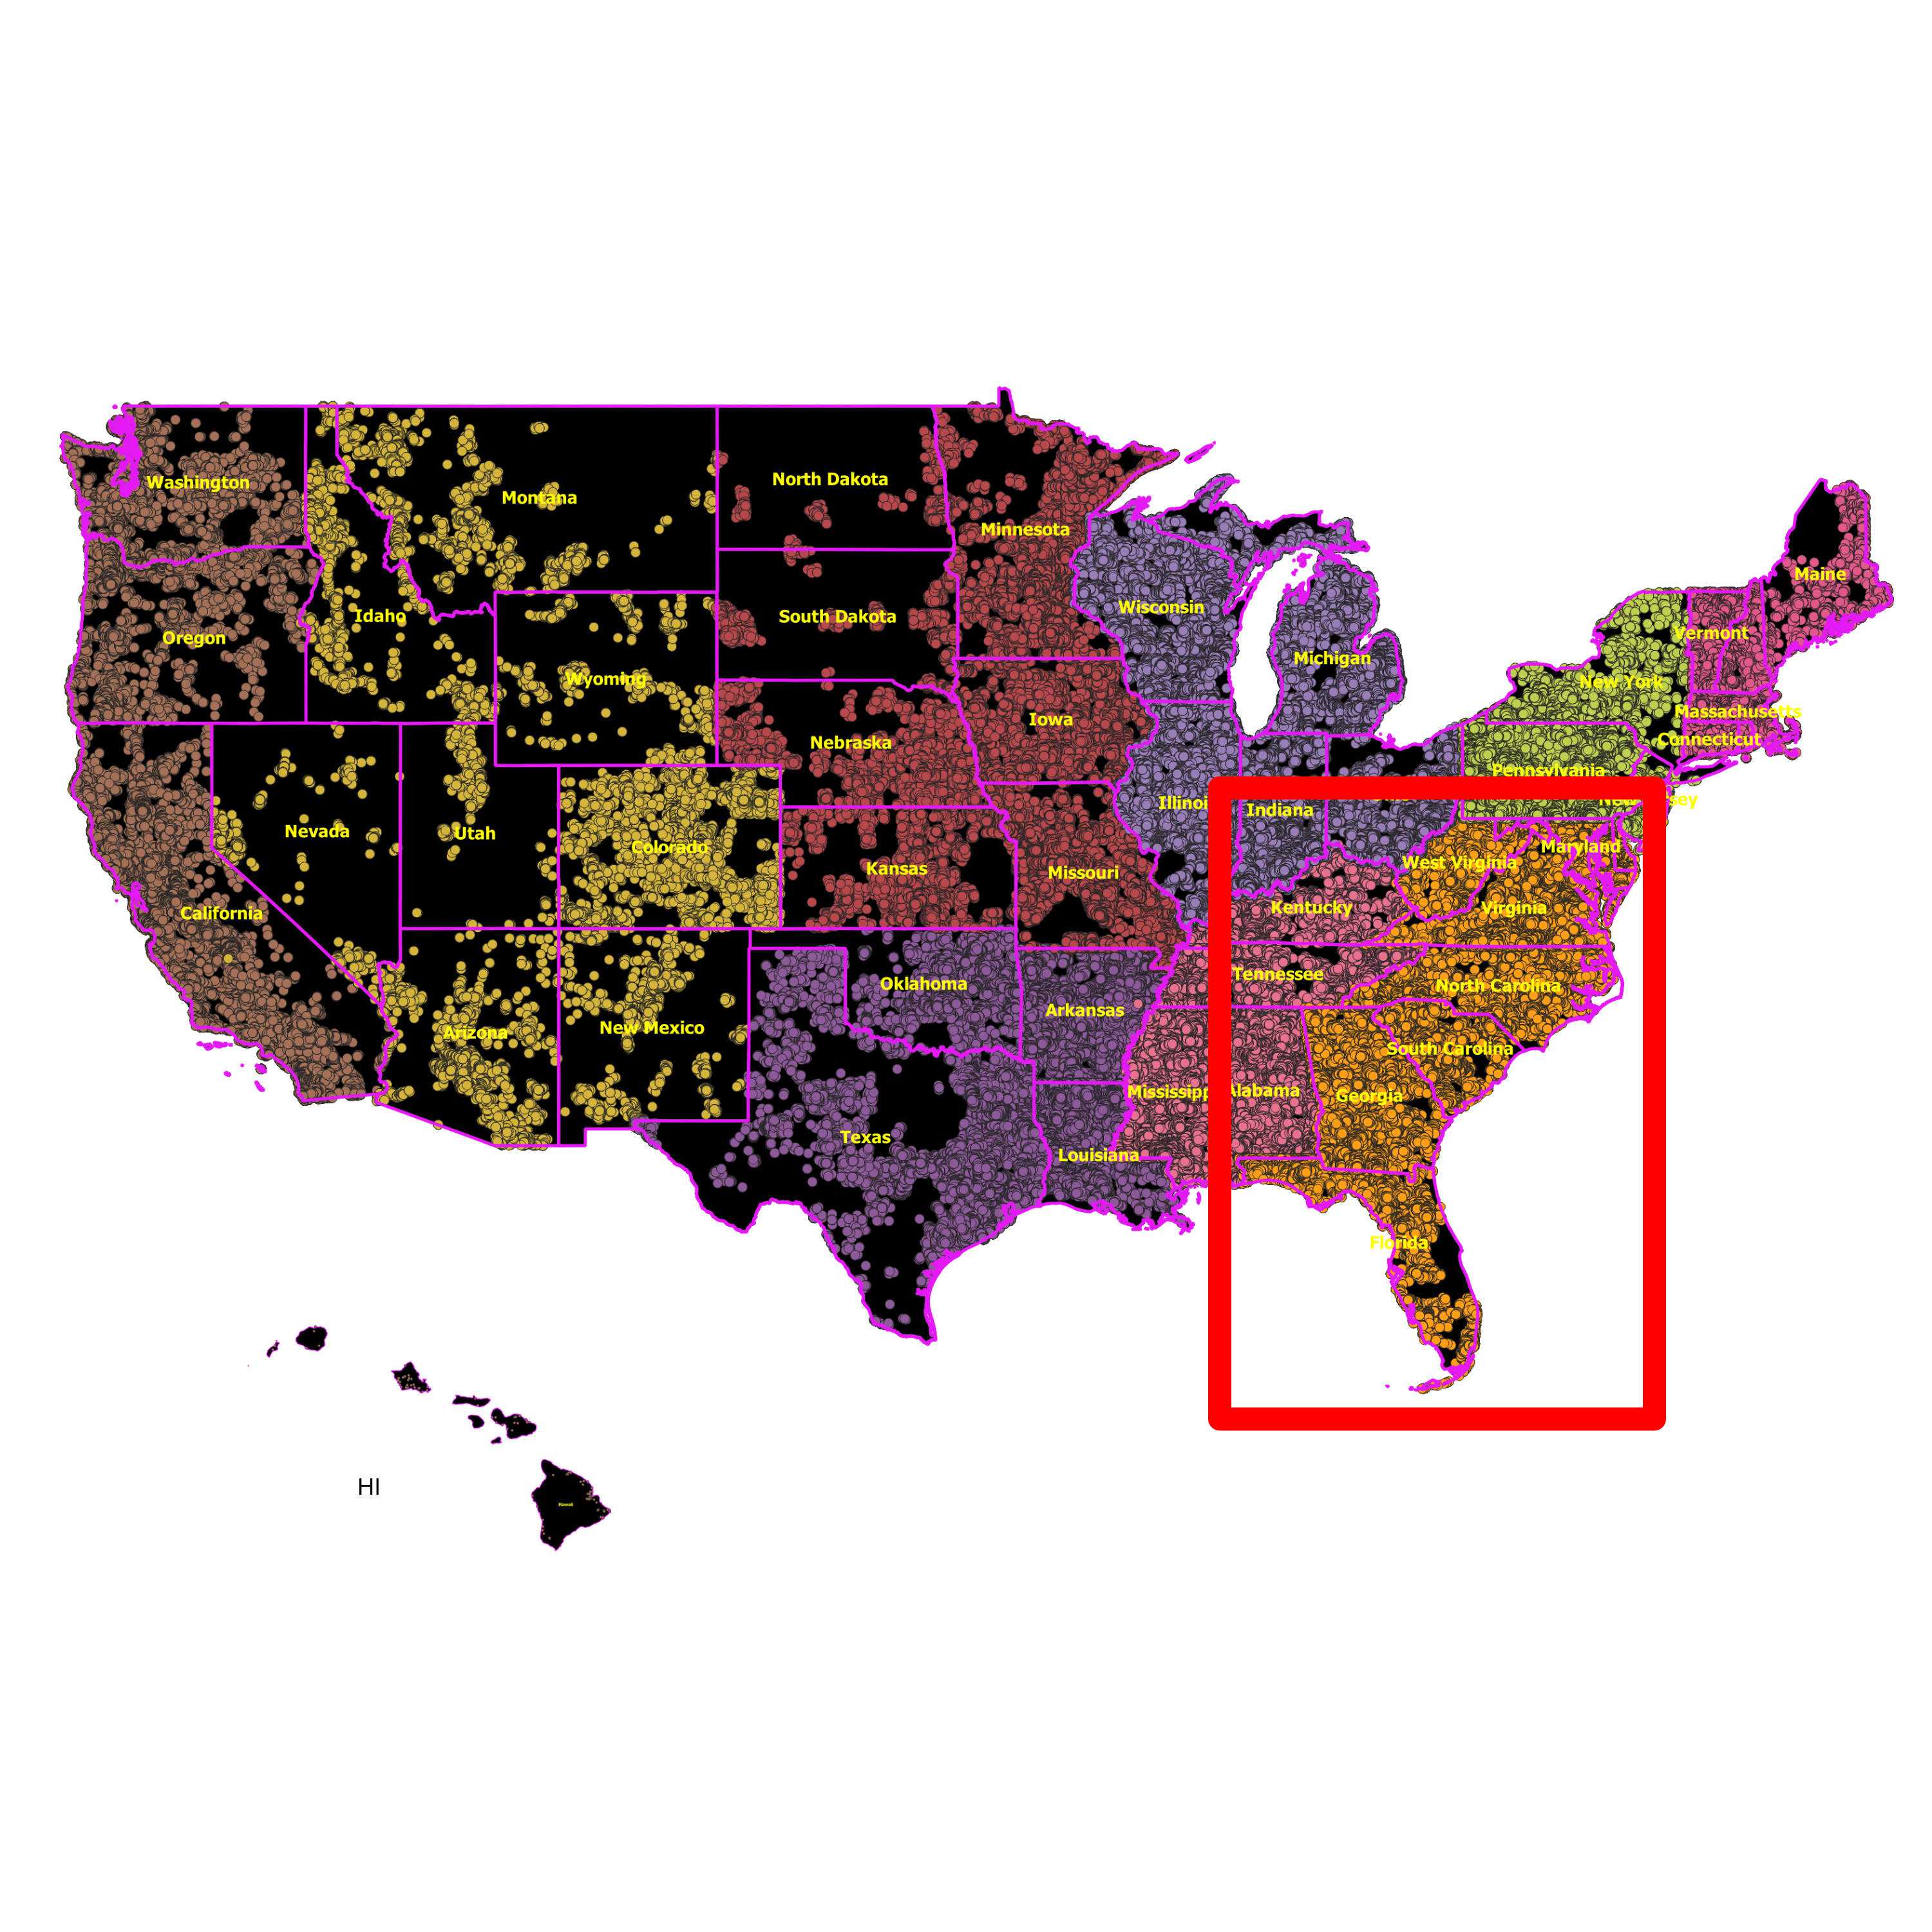 South Atlantic (DE, DC, FL, GA, MD, NC, SC, VA, WV) - RDOF Location Analyzer